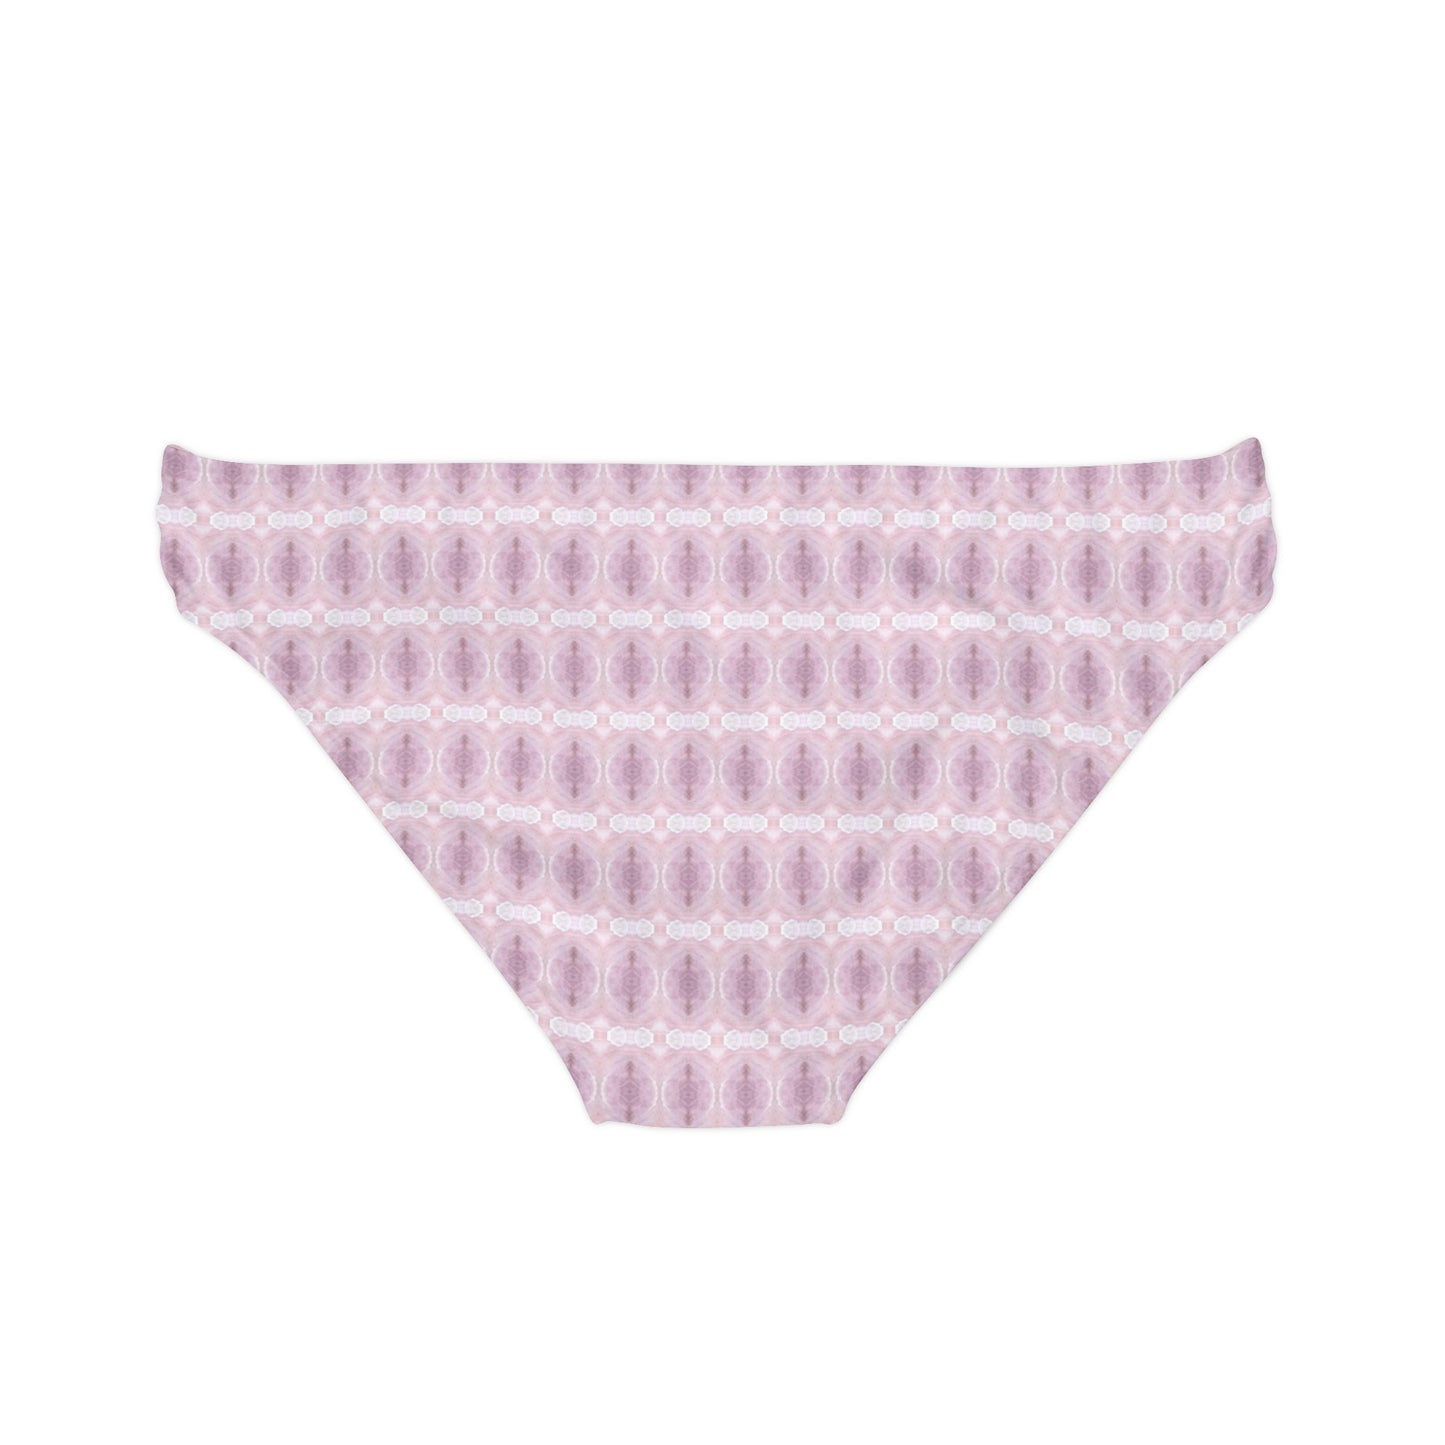 Lavender Salt Loop-tie Bikini Bottom